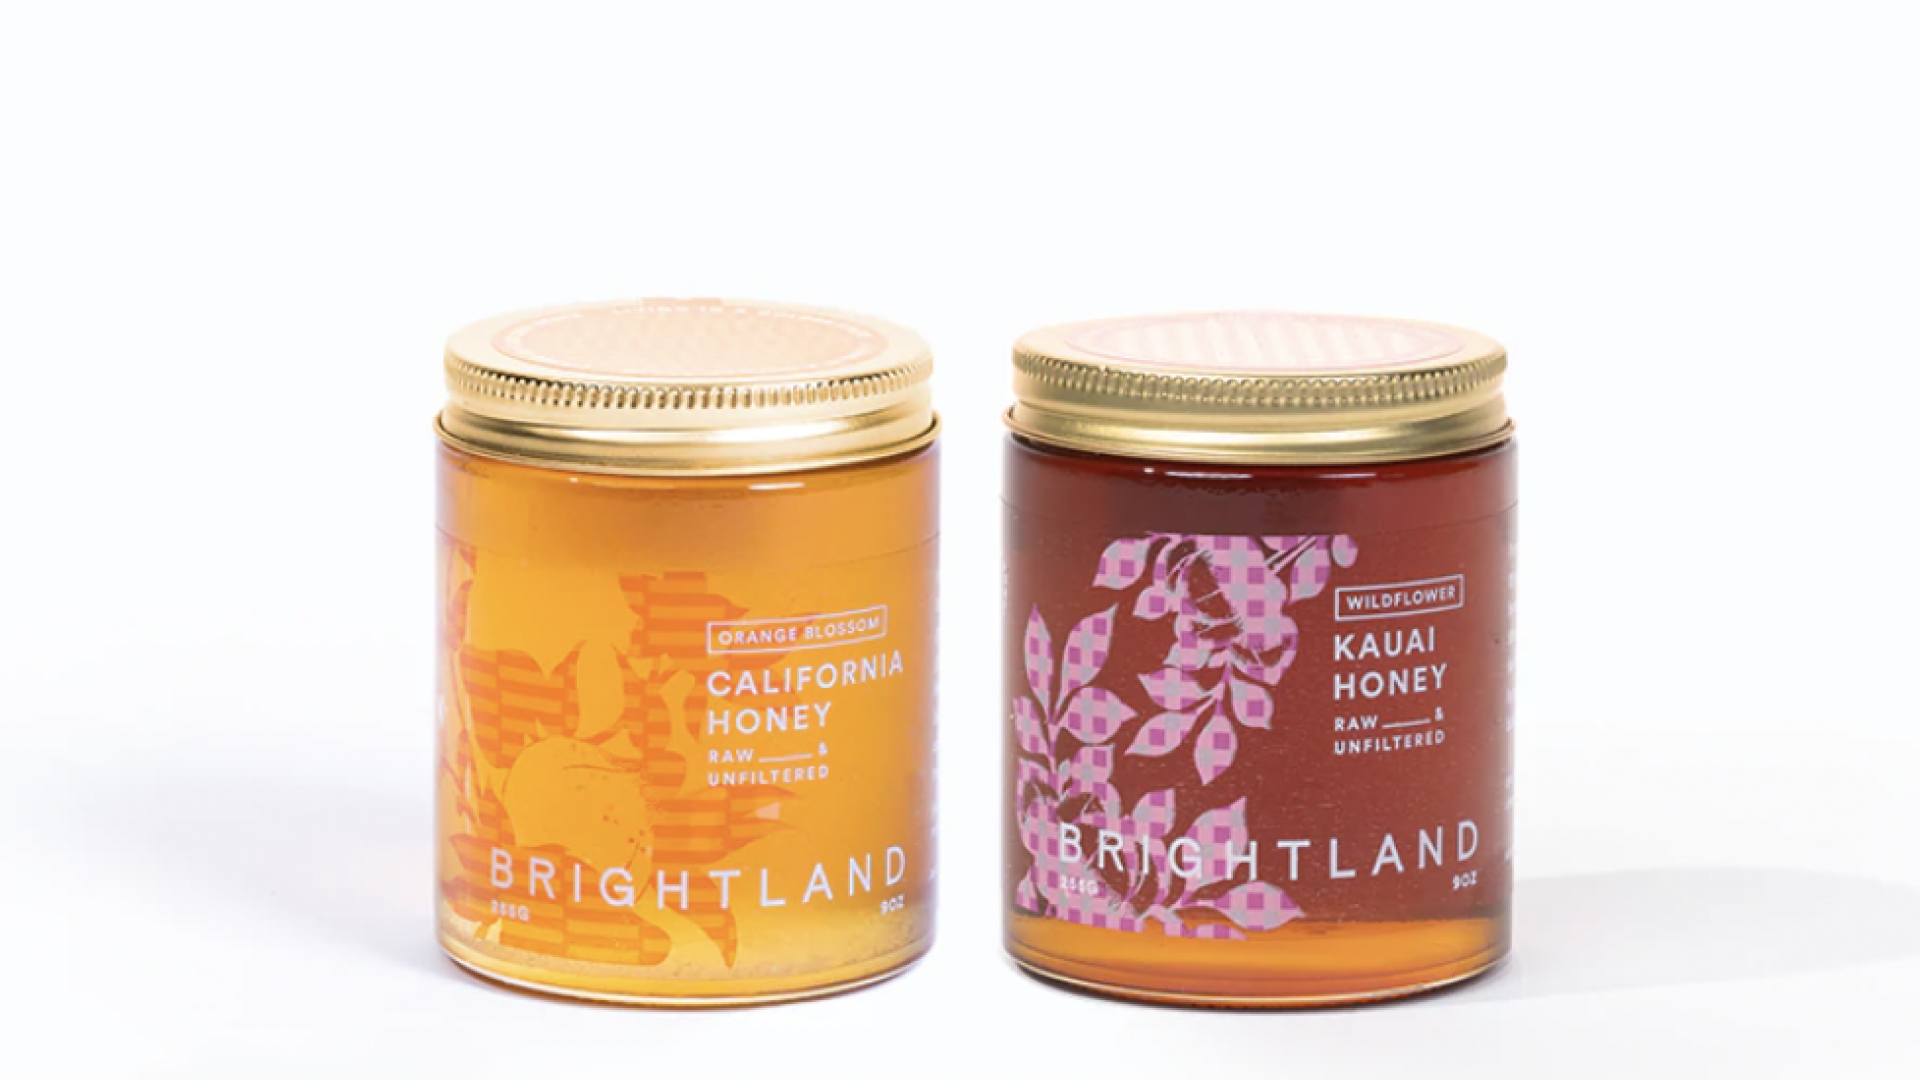 Brightland honey duo